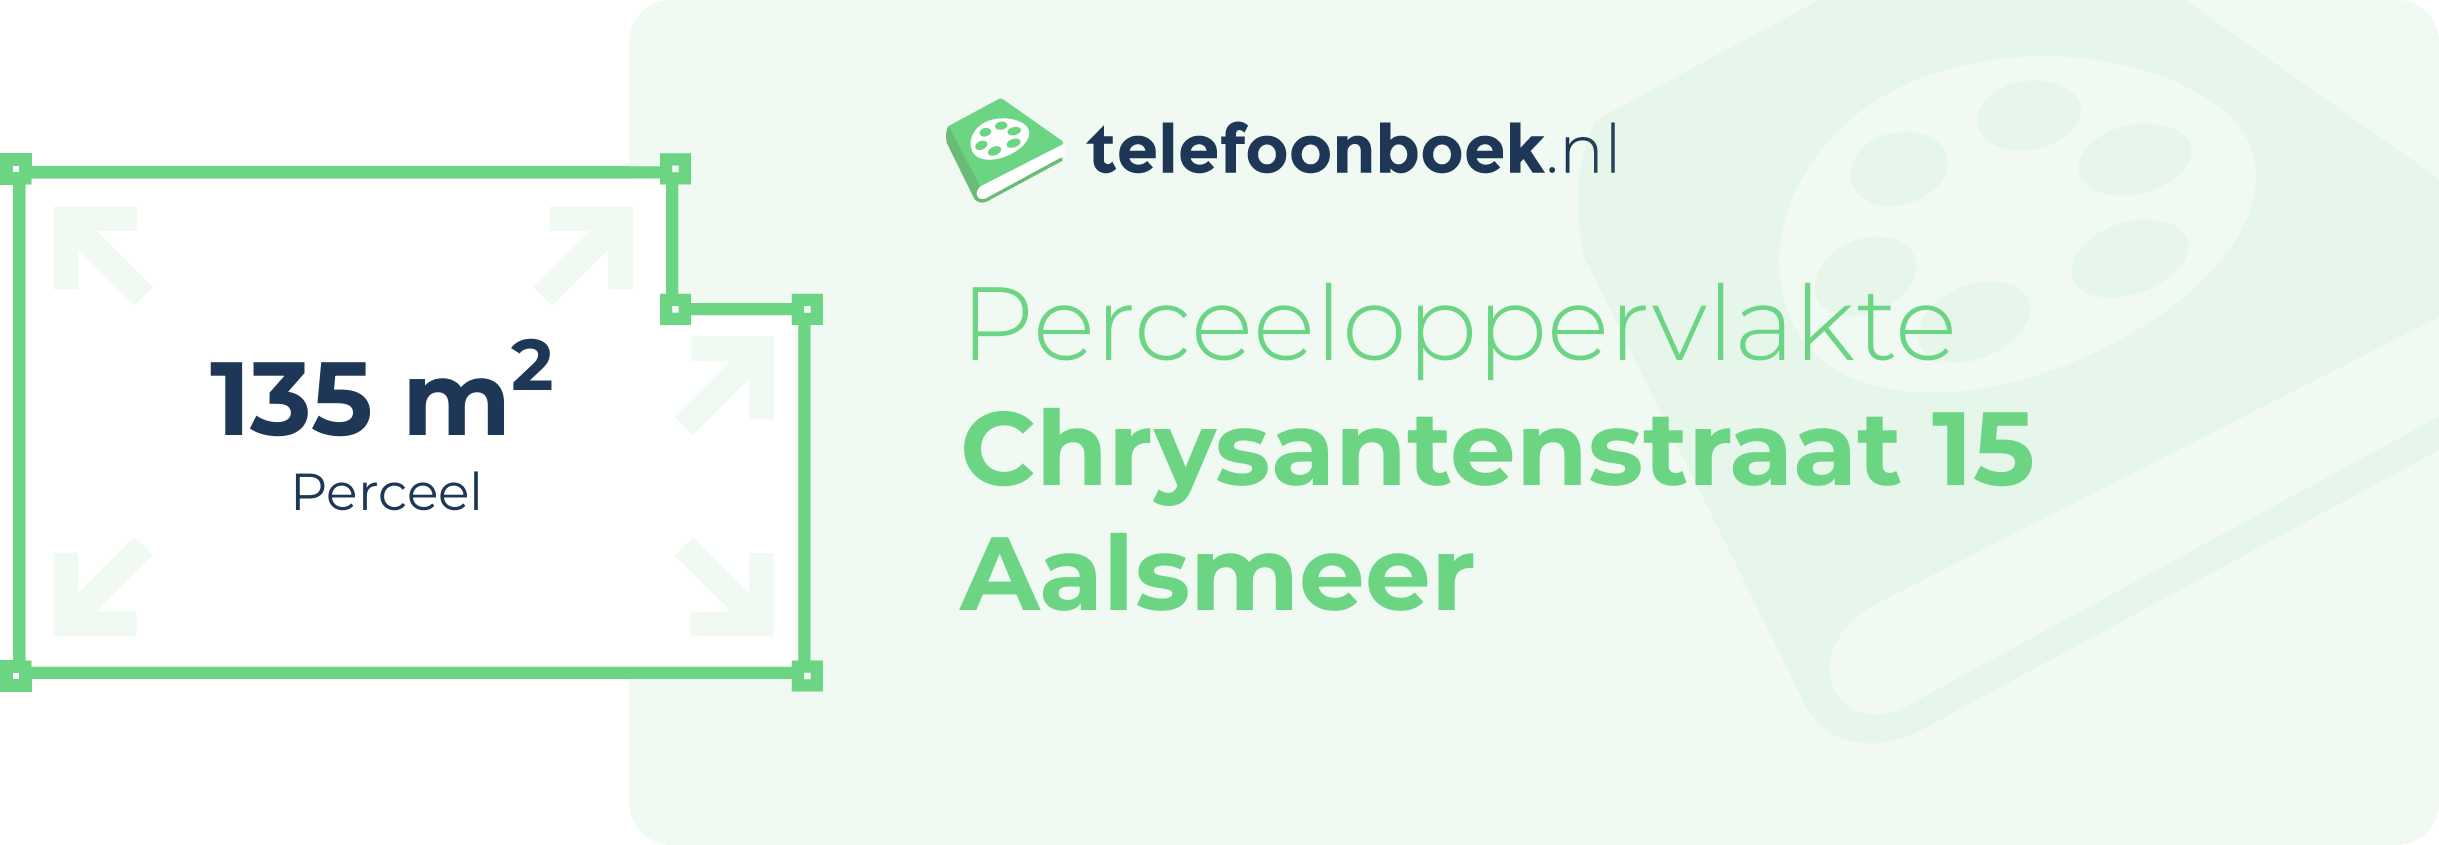 Perceeloppervlakte Chrysantenstraat 15 Aalsmeer